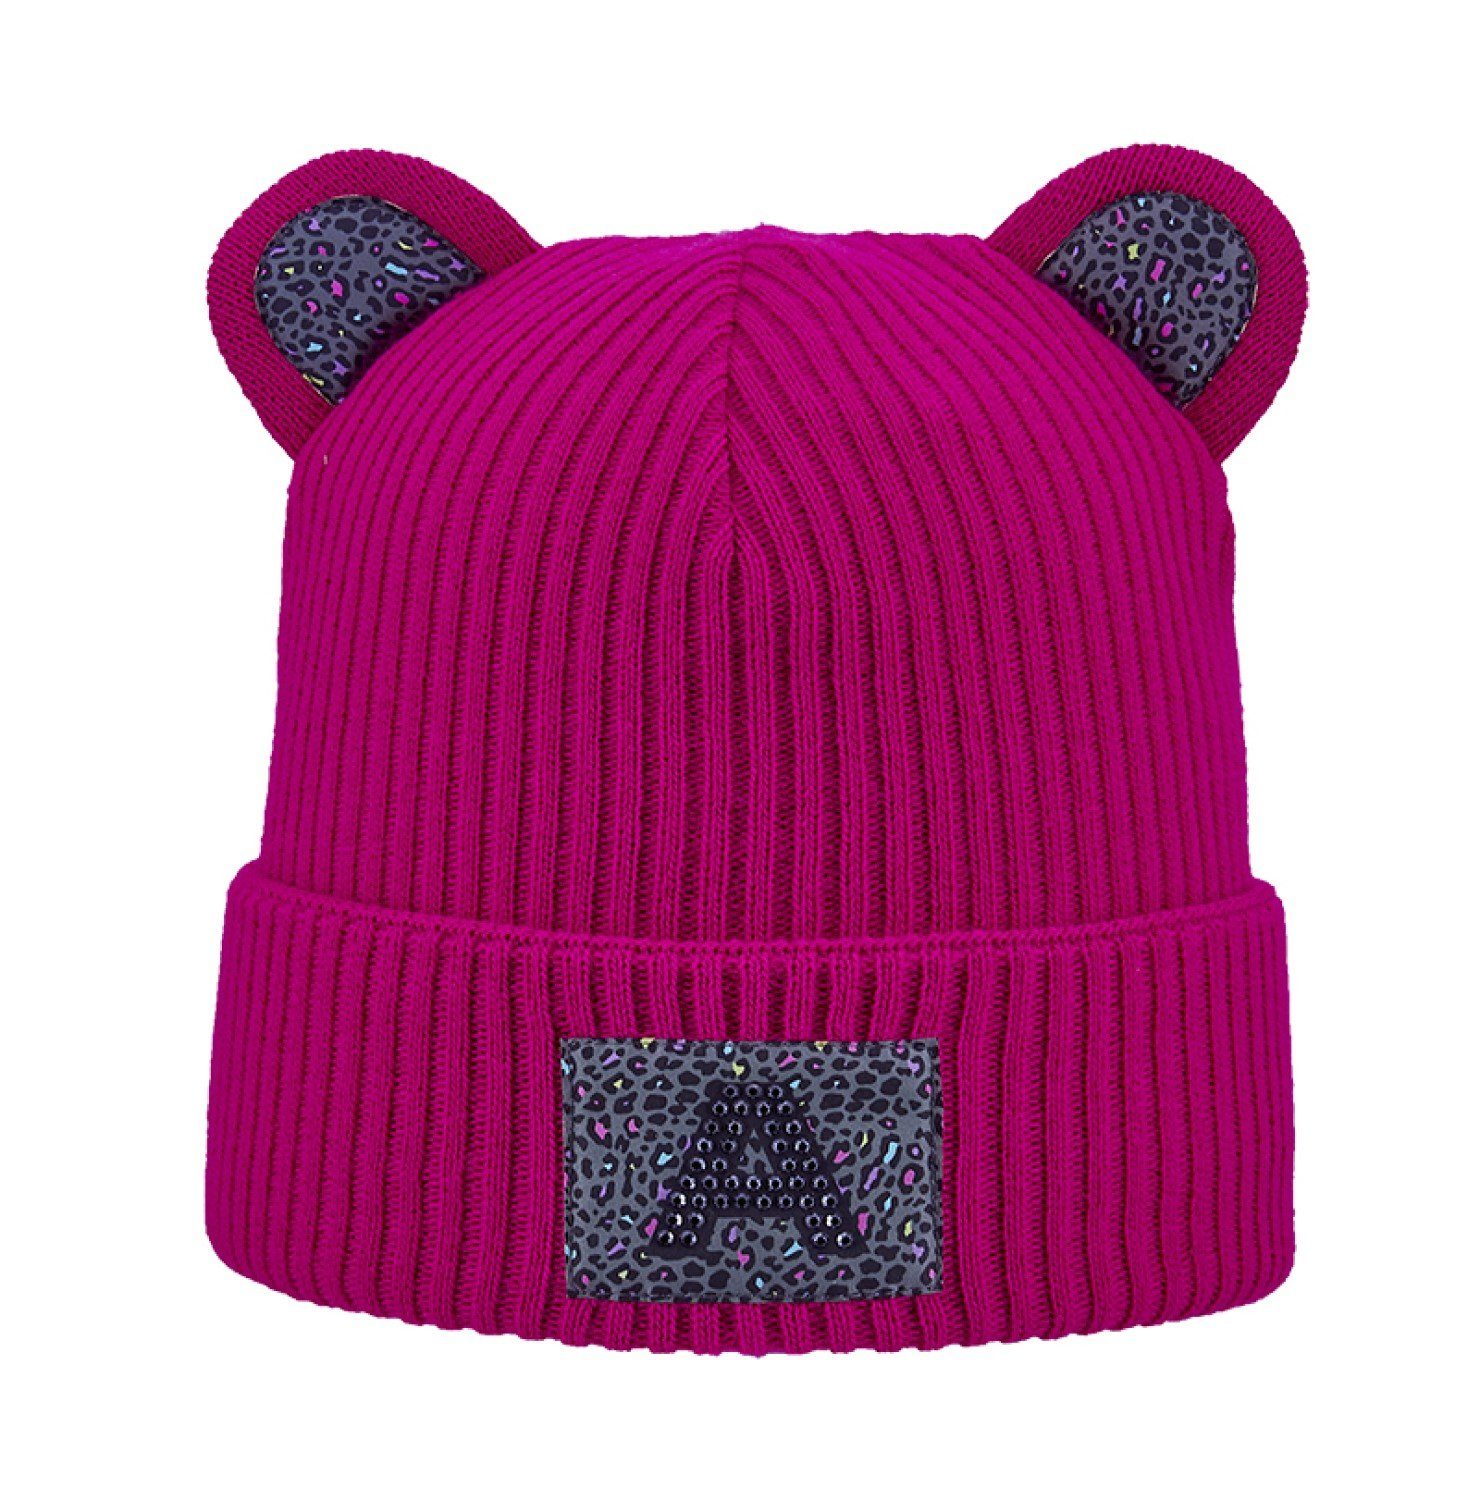 Areco Strickmütze Bären Strickmütze mit Öhrchen & Umschlag 860 pink